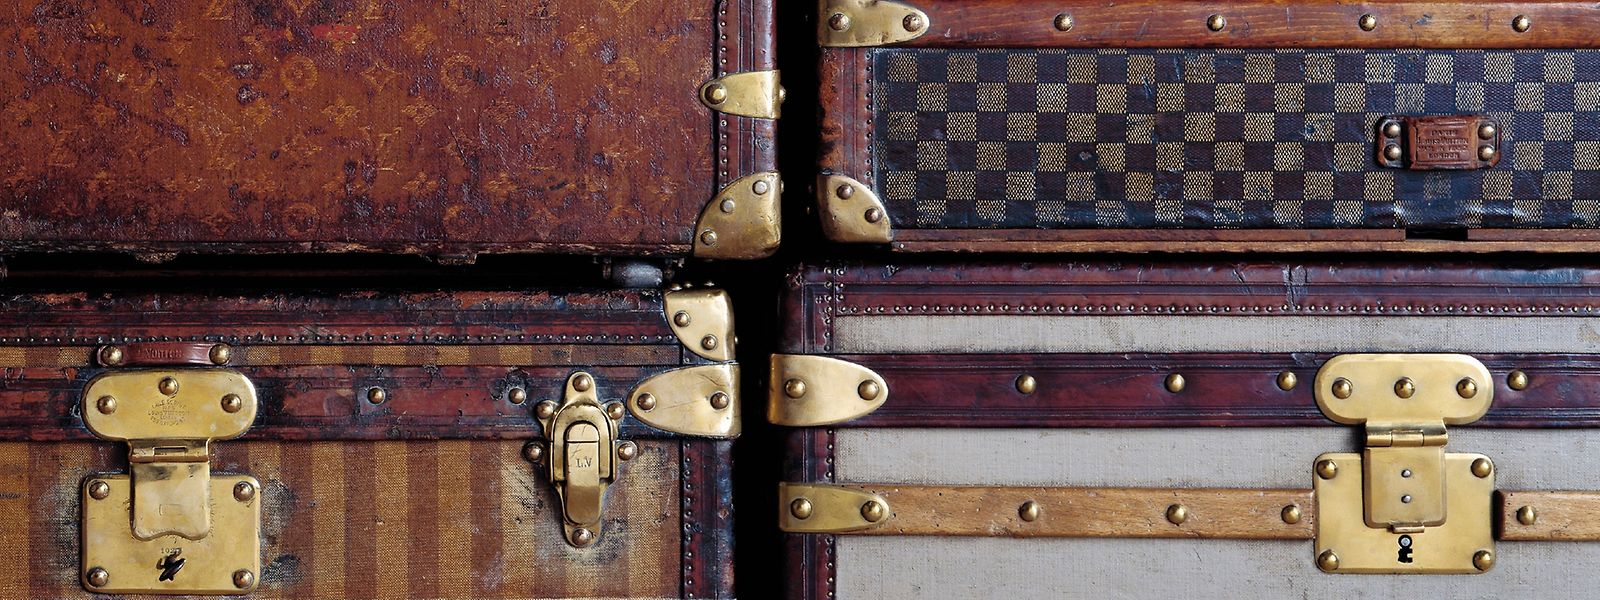 Louis Vuitton fertigte praktische Koffer für wohlhabende Reisende an und baute eine Firma auf, die auch lange nach seinem Tod für den Luxus «à la française» steht. Vuitton gehört zum LVMH-Konzern.